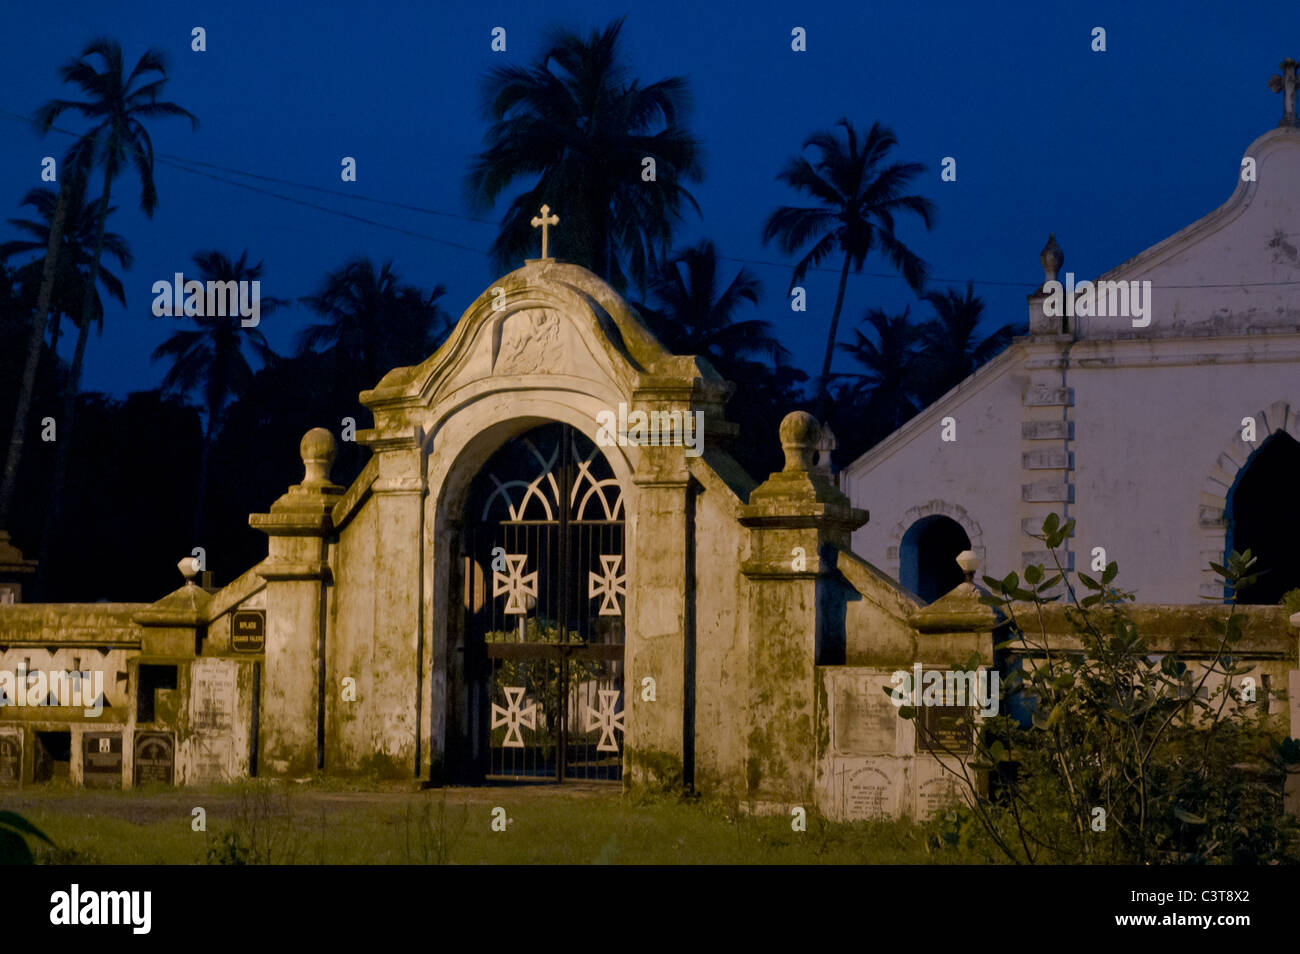 Portoghese architettura coloniale in Goa, India. Il cancello anteriore per una chiesa cattolica romana motivi. Foto Stock